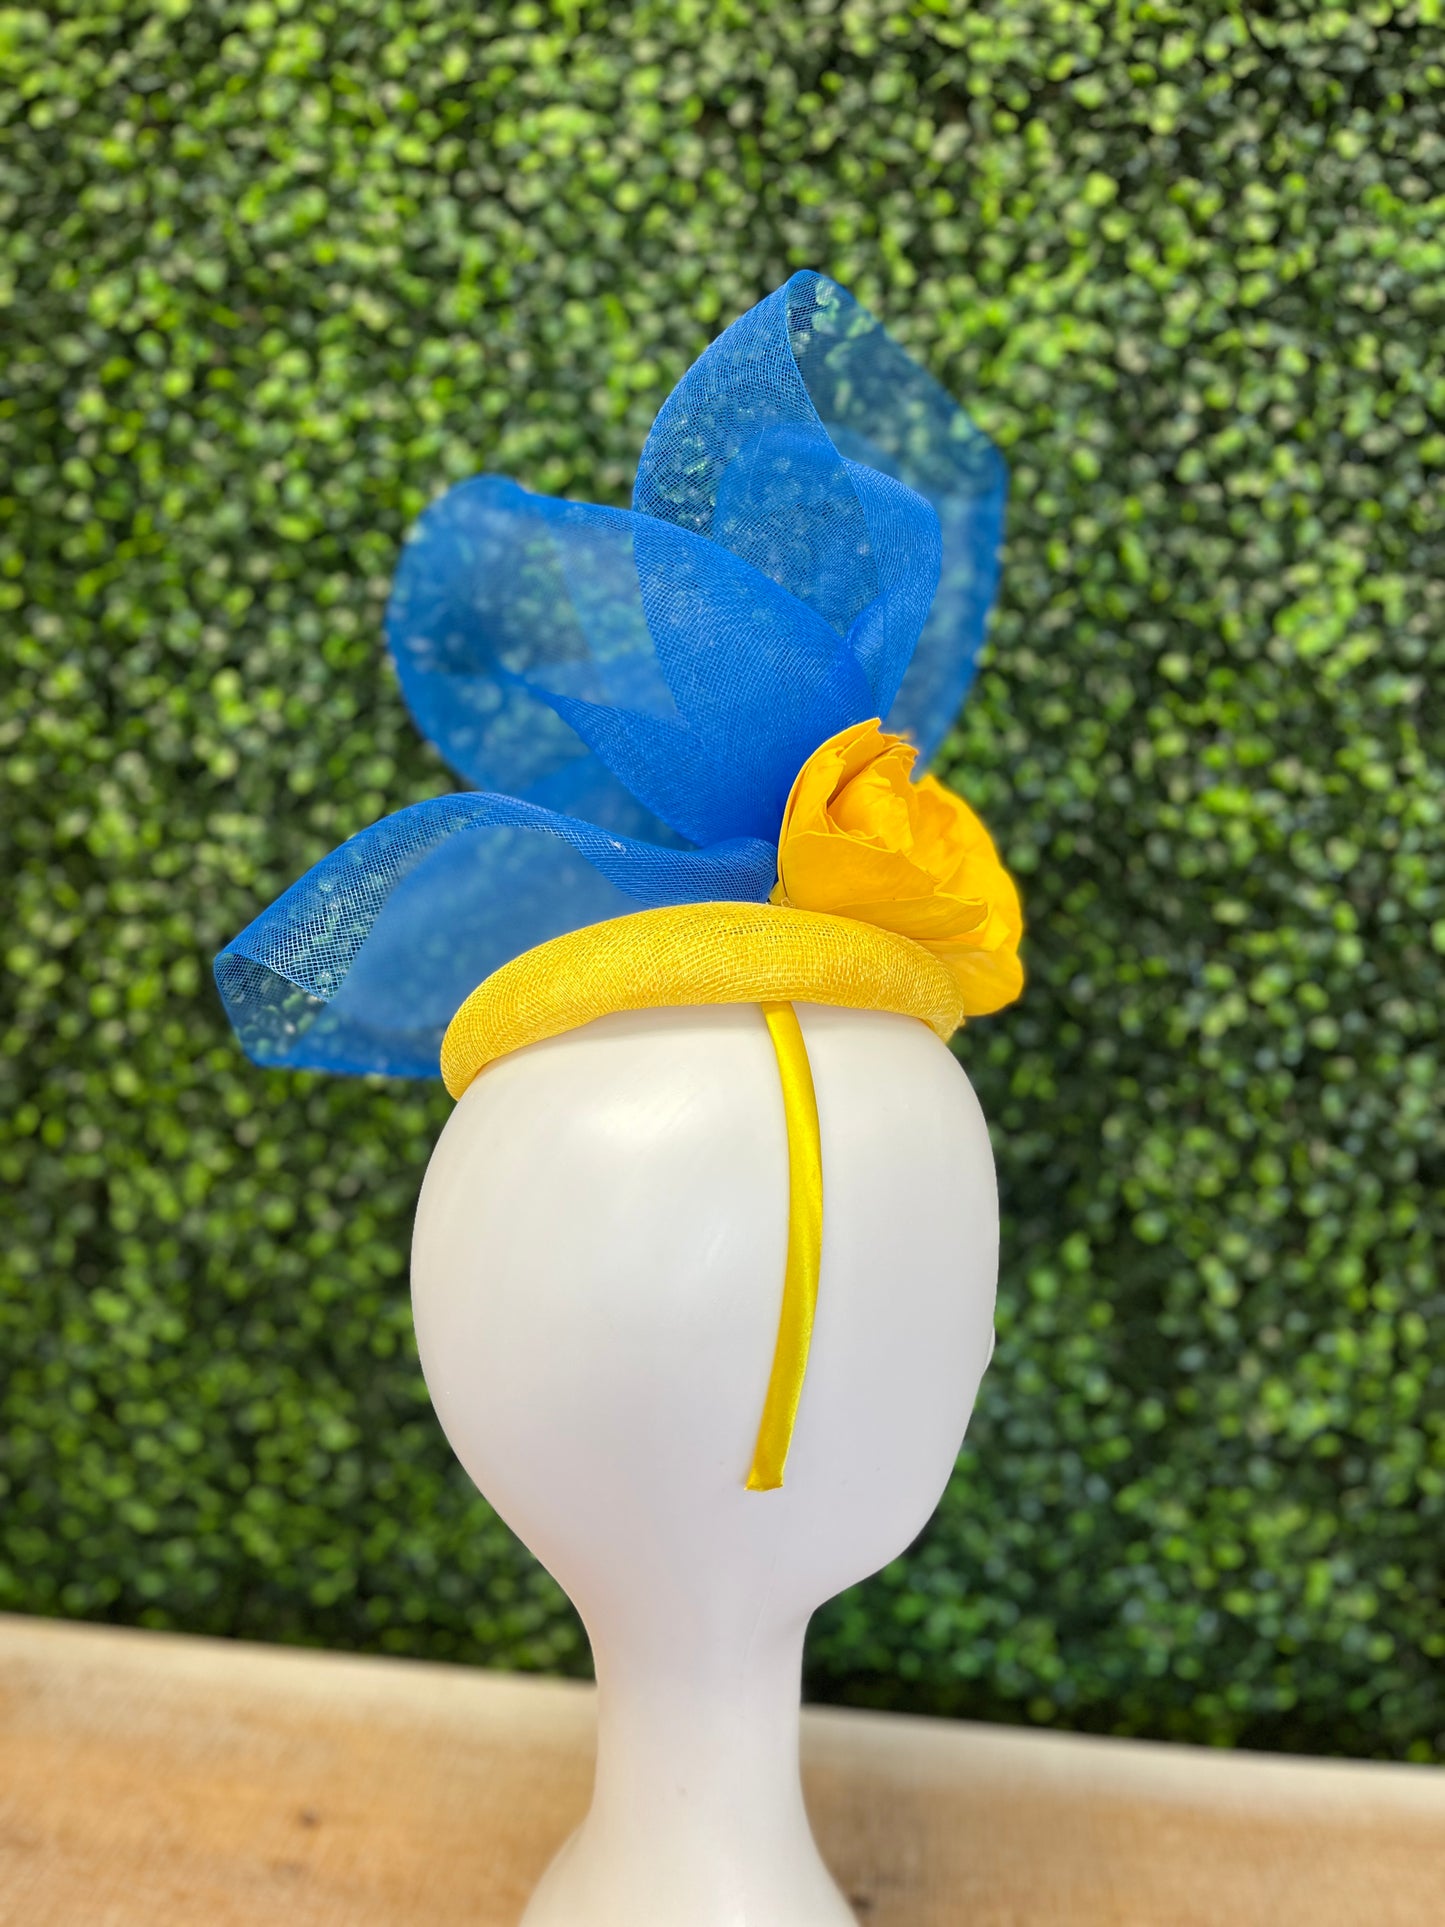 Handmade Yellow & Blue Crinoline Fascinator Hat